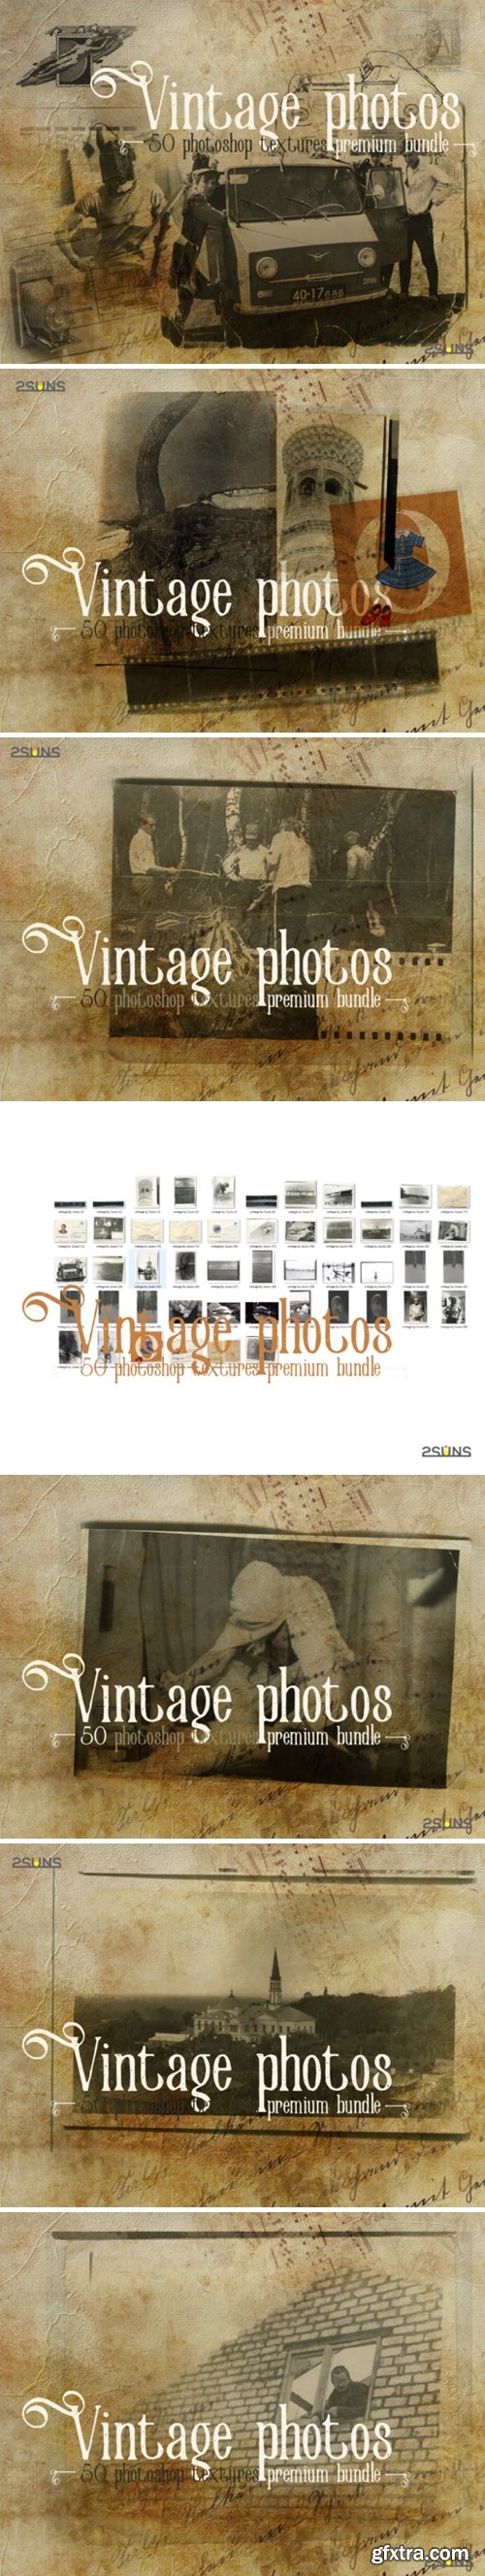 Premium Bundle Vintage Photoshop Texture 3041251